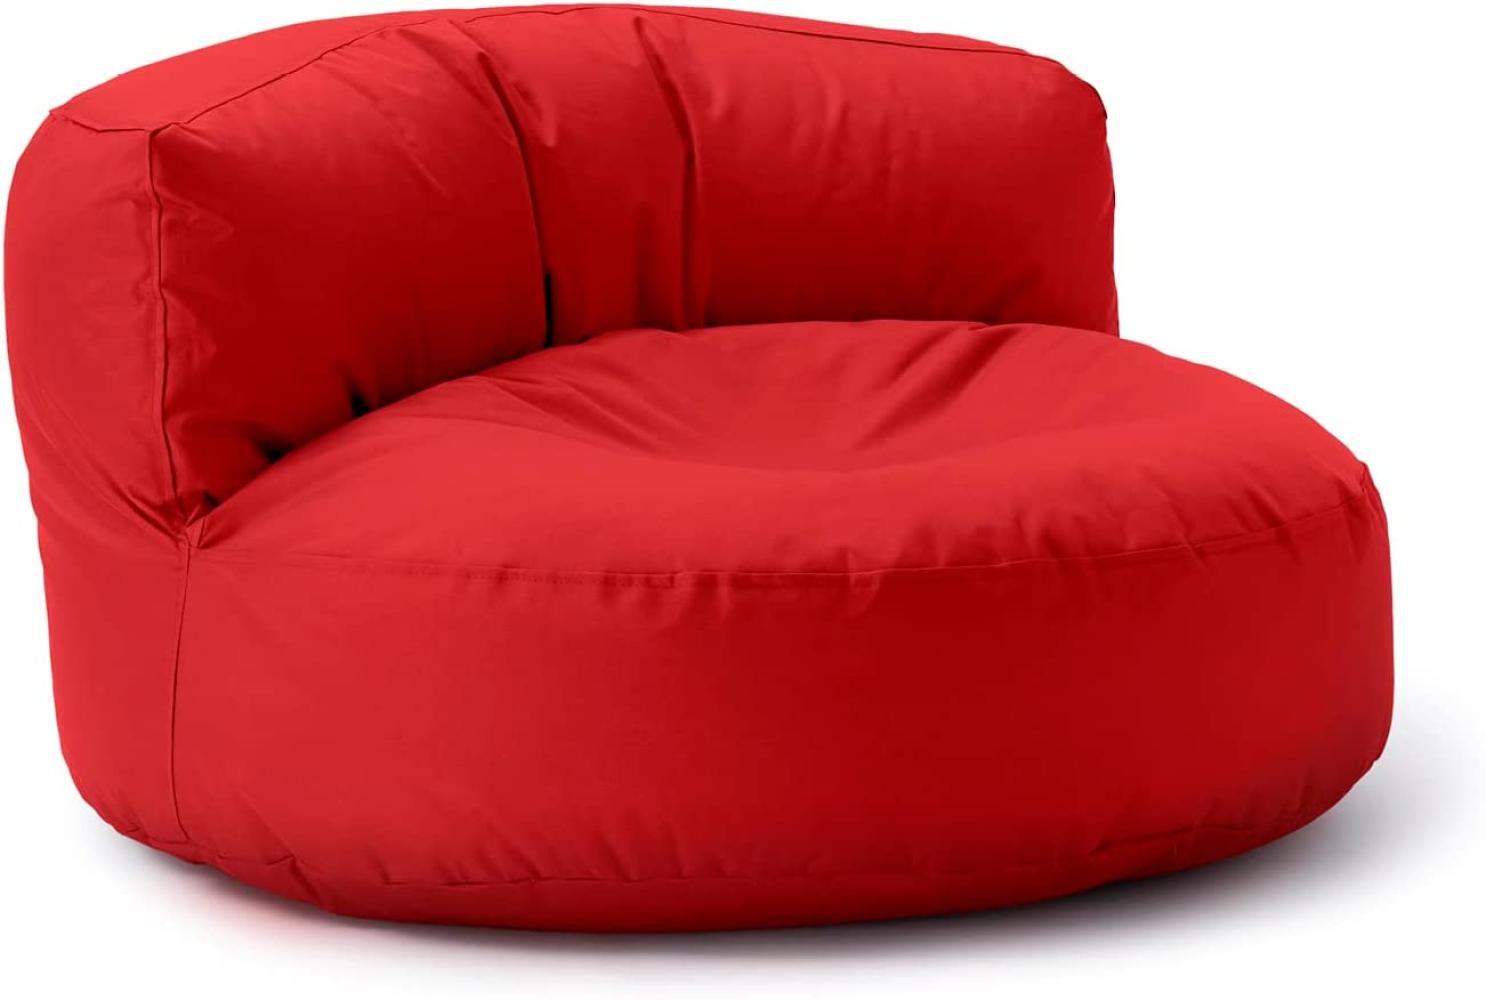 Lumaland Outdoor Sitzsack-Lounge, Rundes Sitzsack-Sofa für draußen, 320l Füllung, 90 x 50 cm, Rot Bild 1